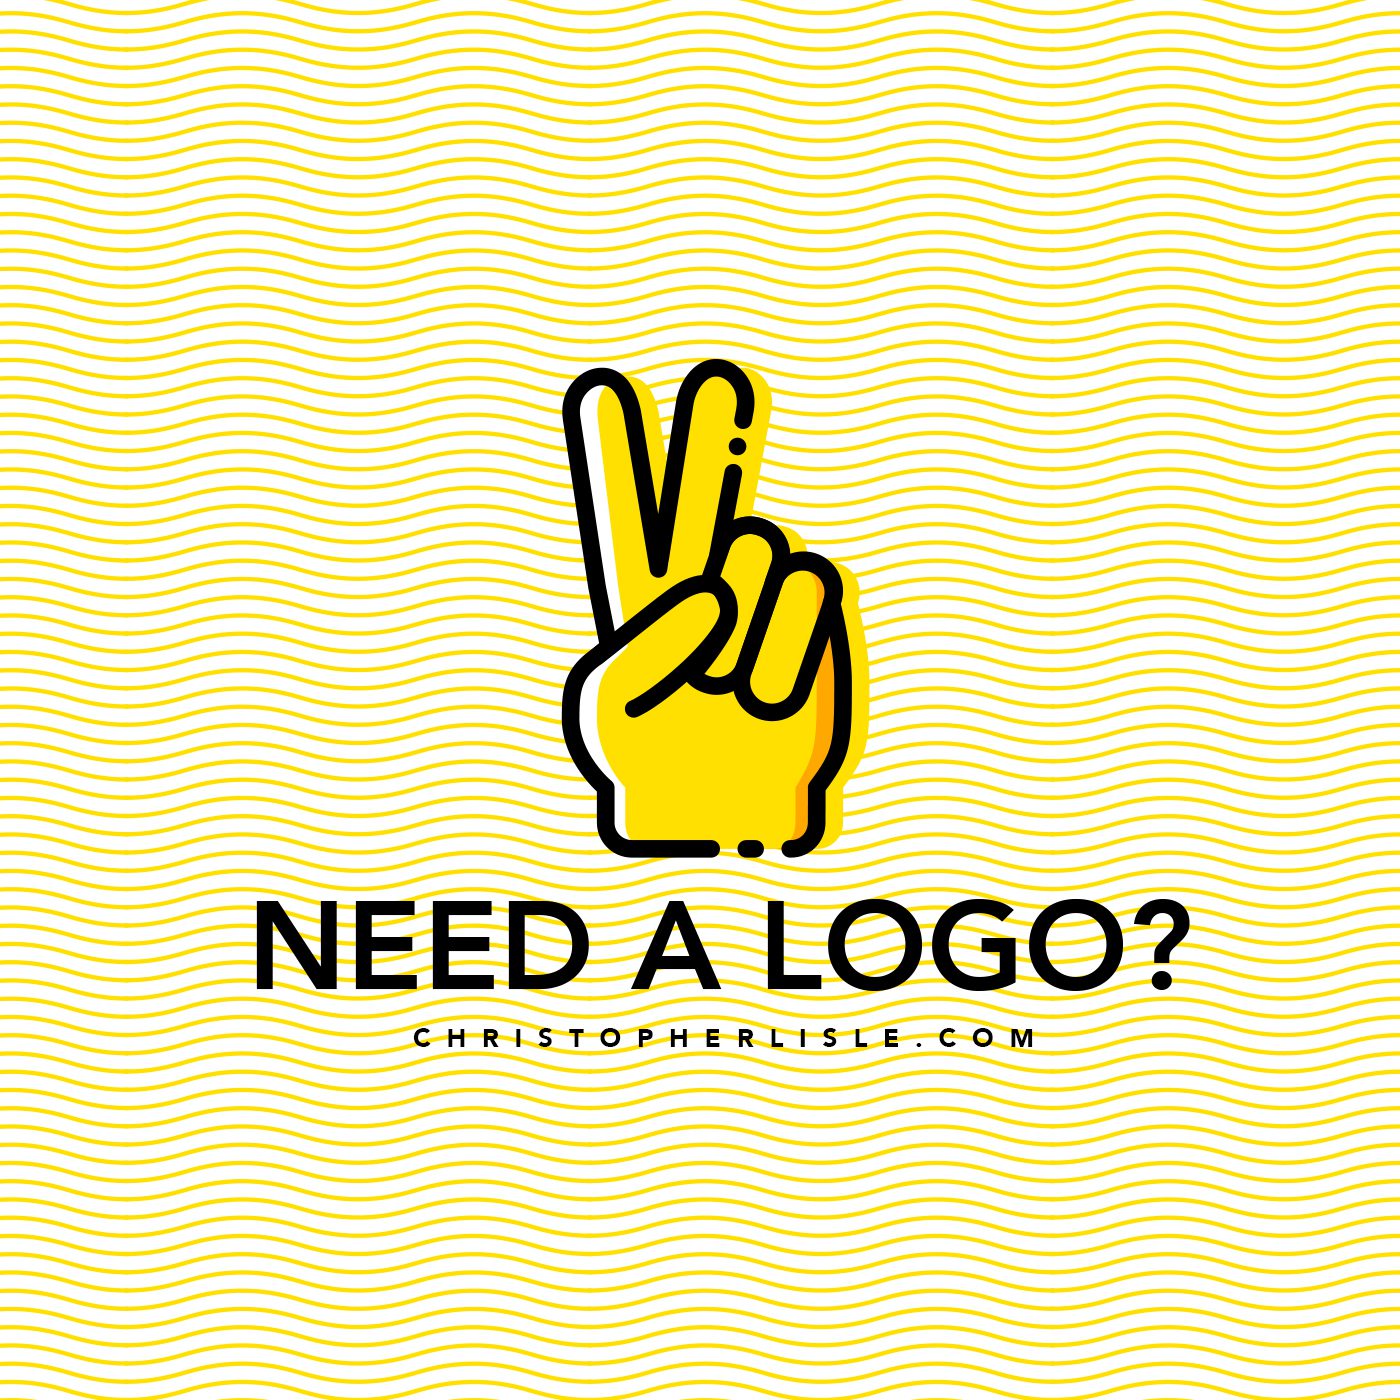 Need a logo?